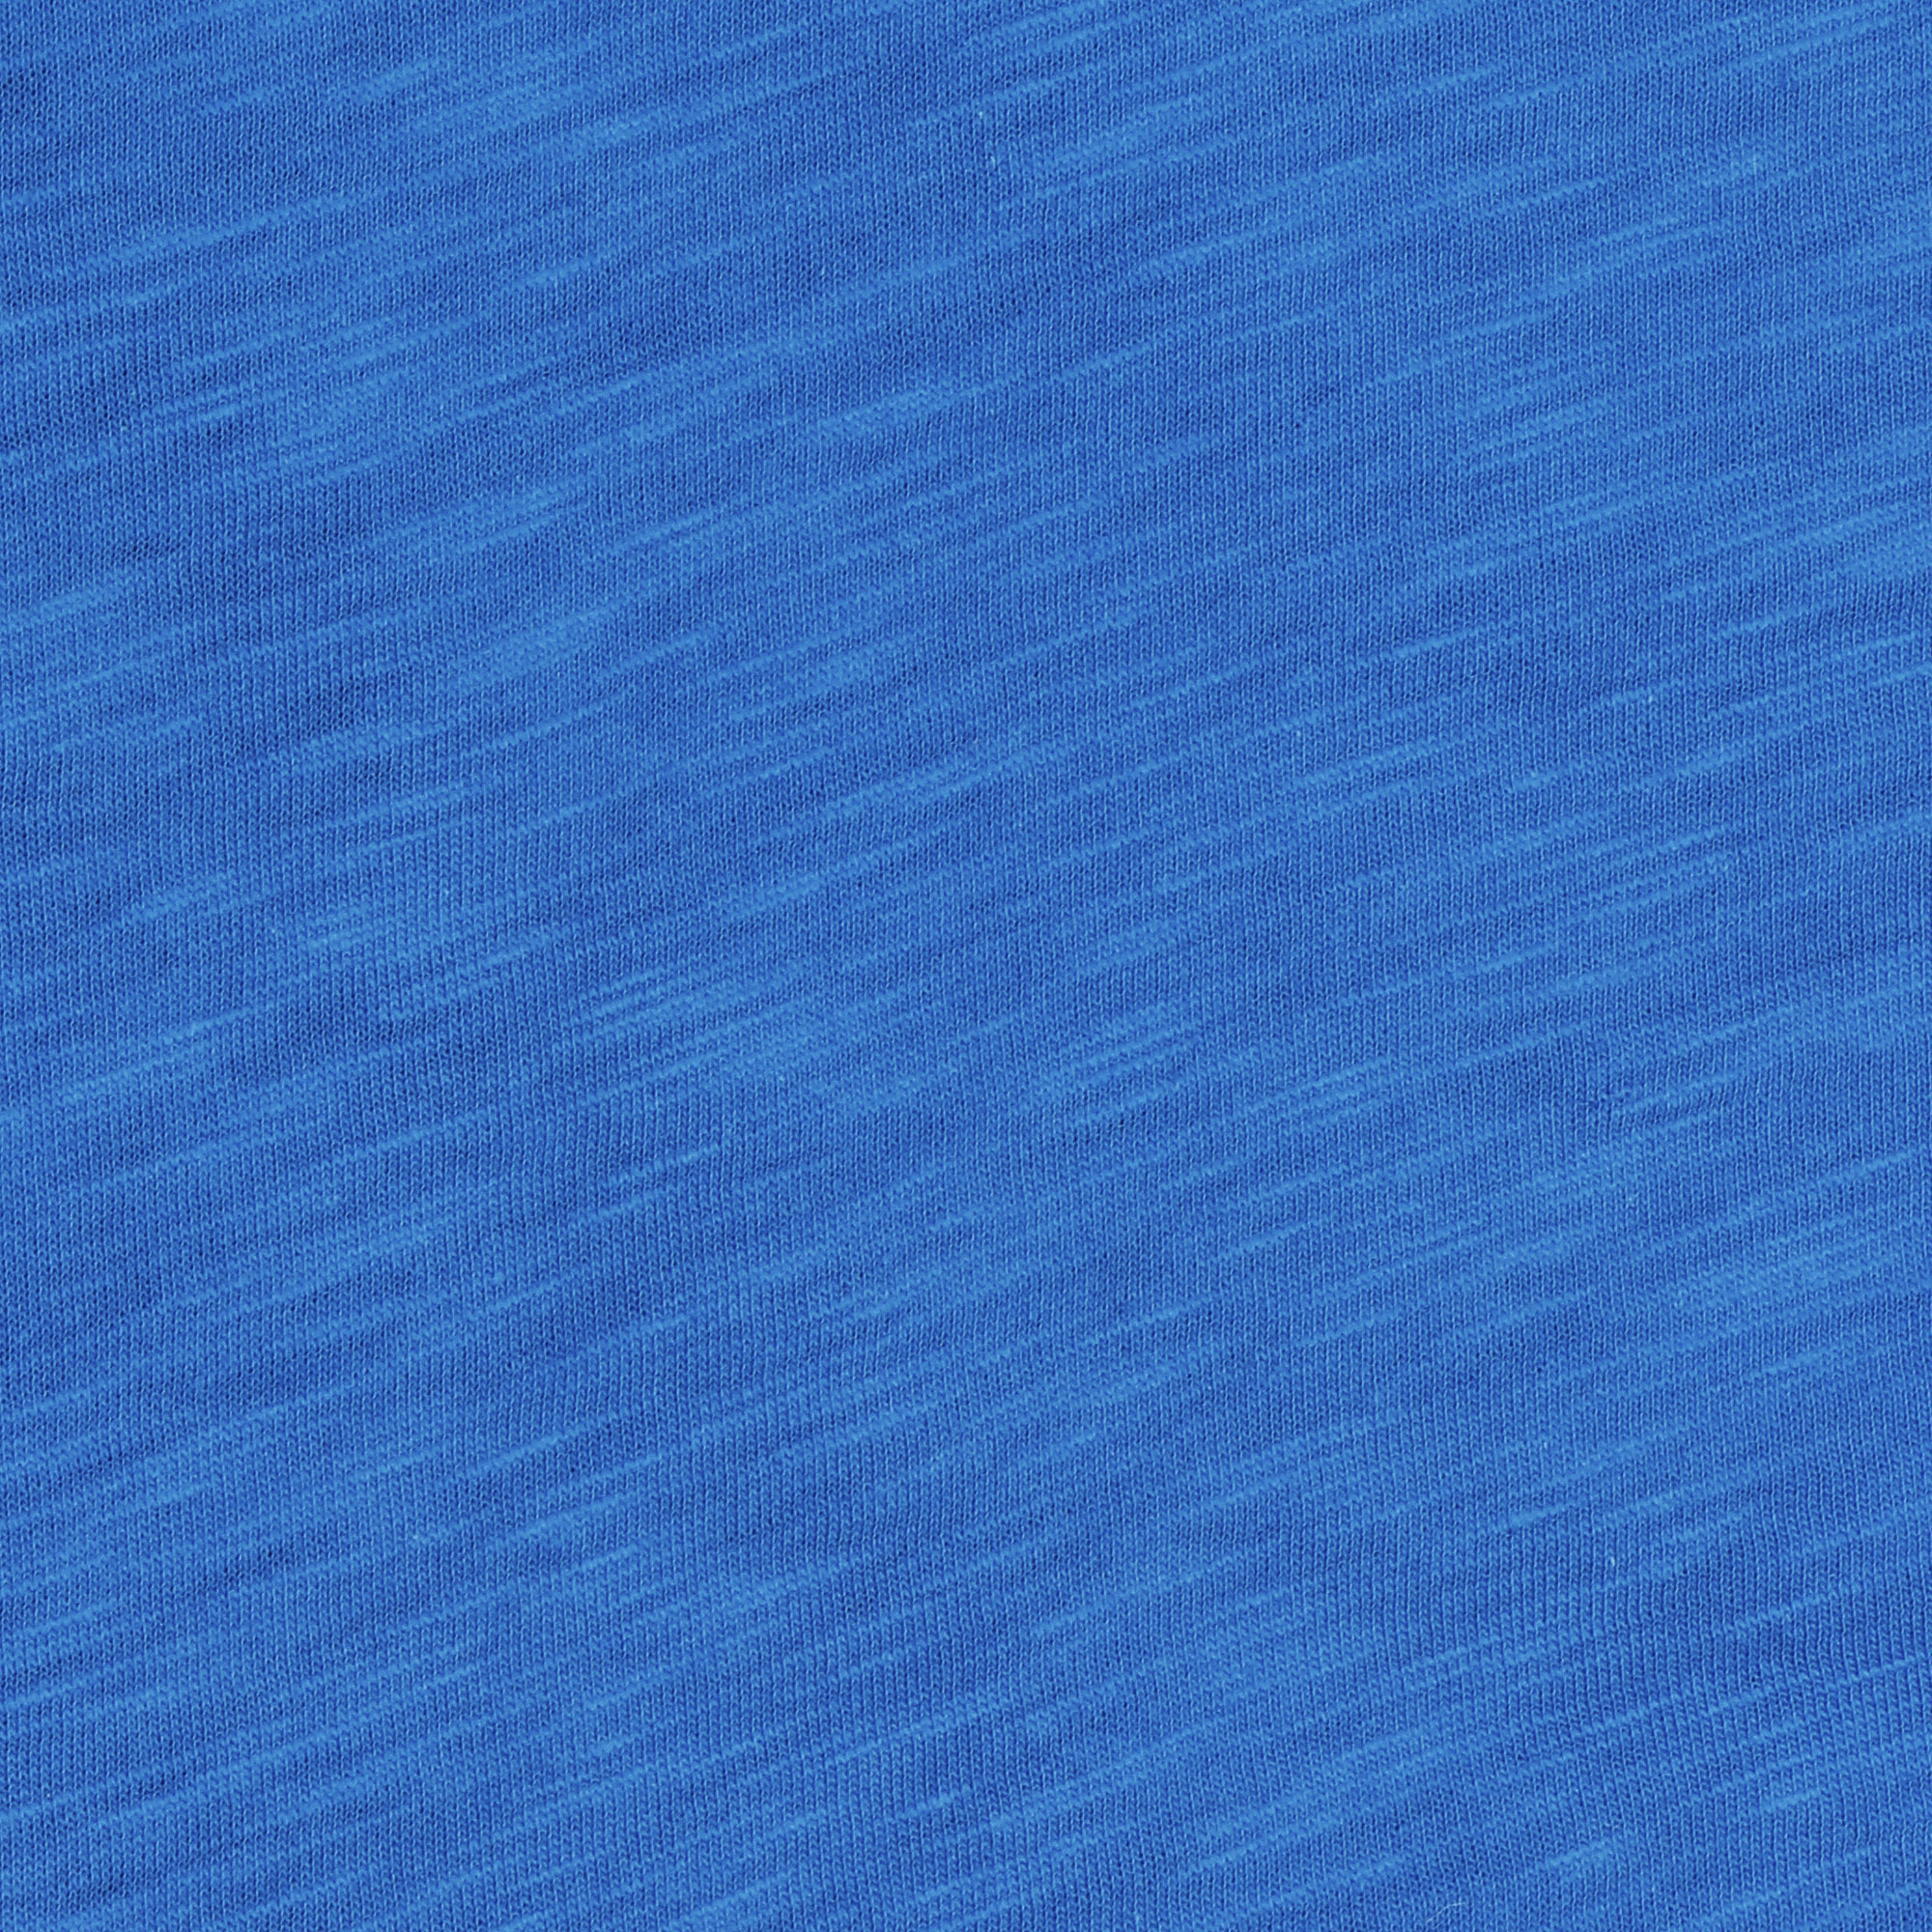 Футболка мужская Pantelemone MF-918 синяя 52, цвет синий, размер 52 - фото 2